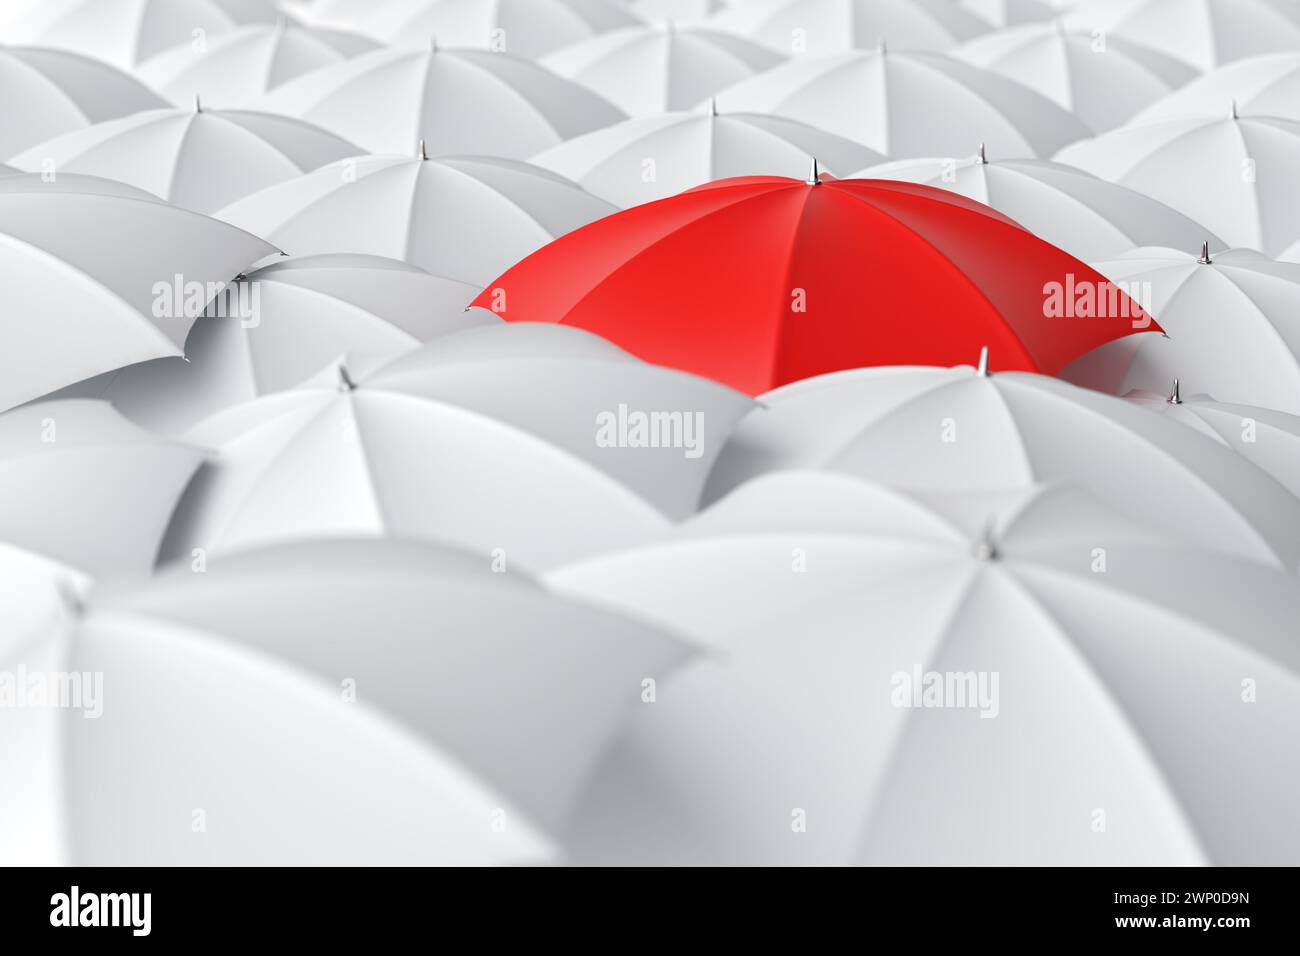 Parapluie rouge se détachant de la foule des parapluies blancs. Individualité, différence, leadership et concepts de lutte. Vue de dessus. Rendu 3D. Banque D'Images